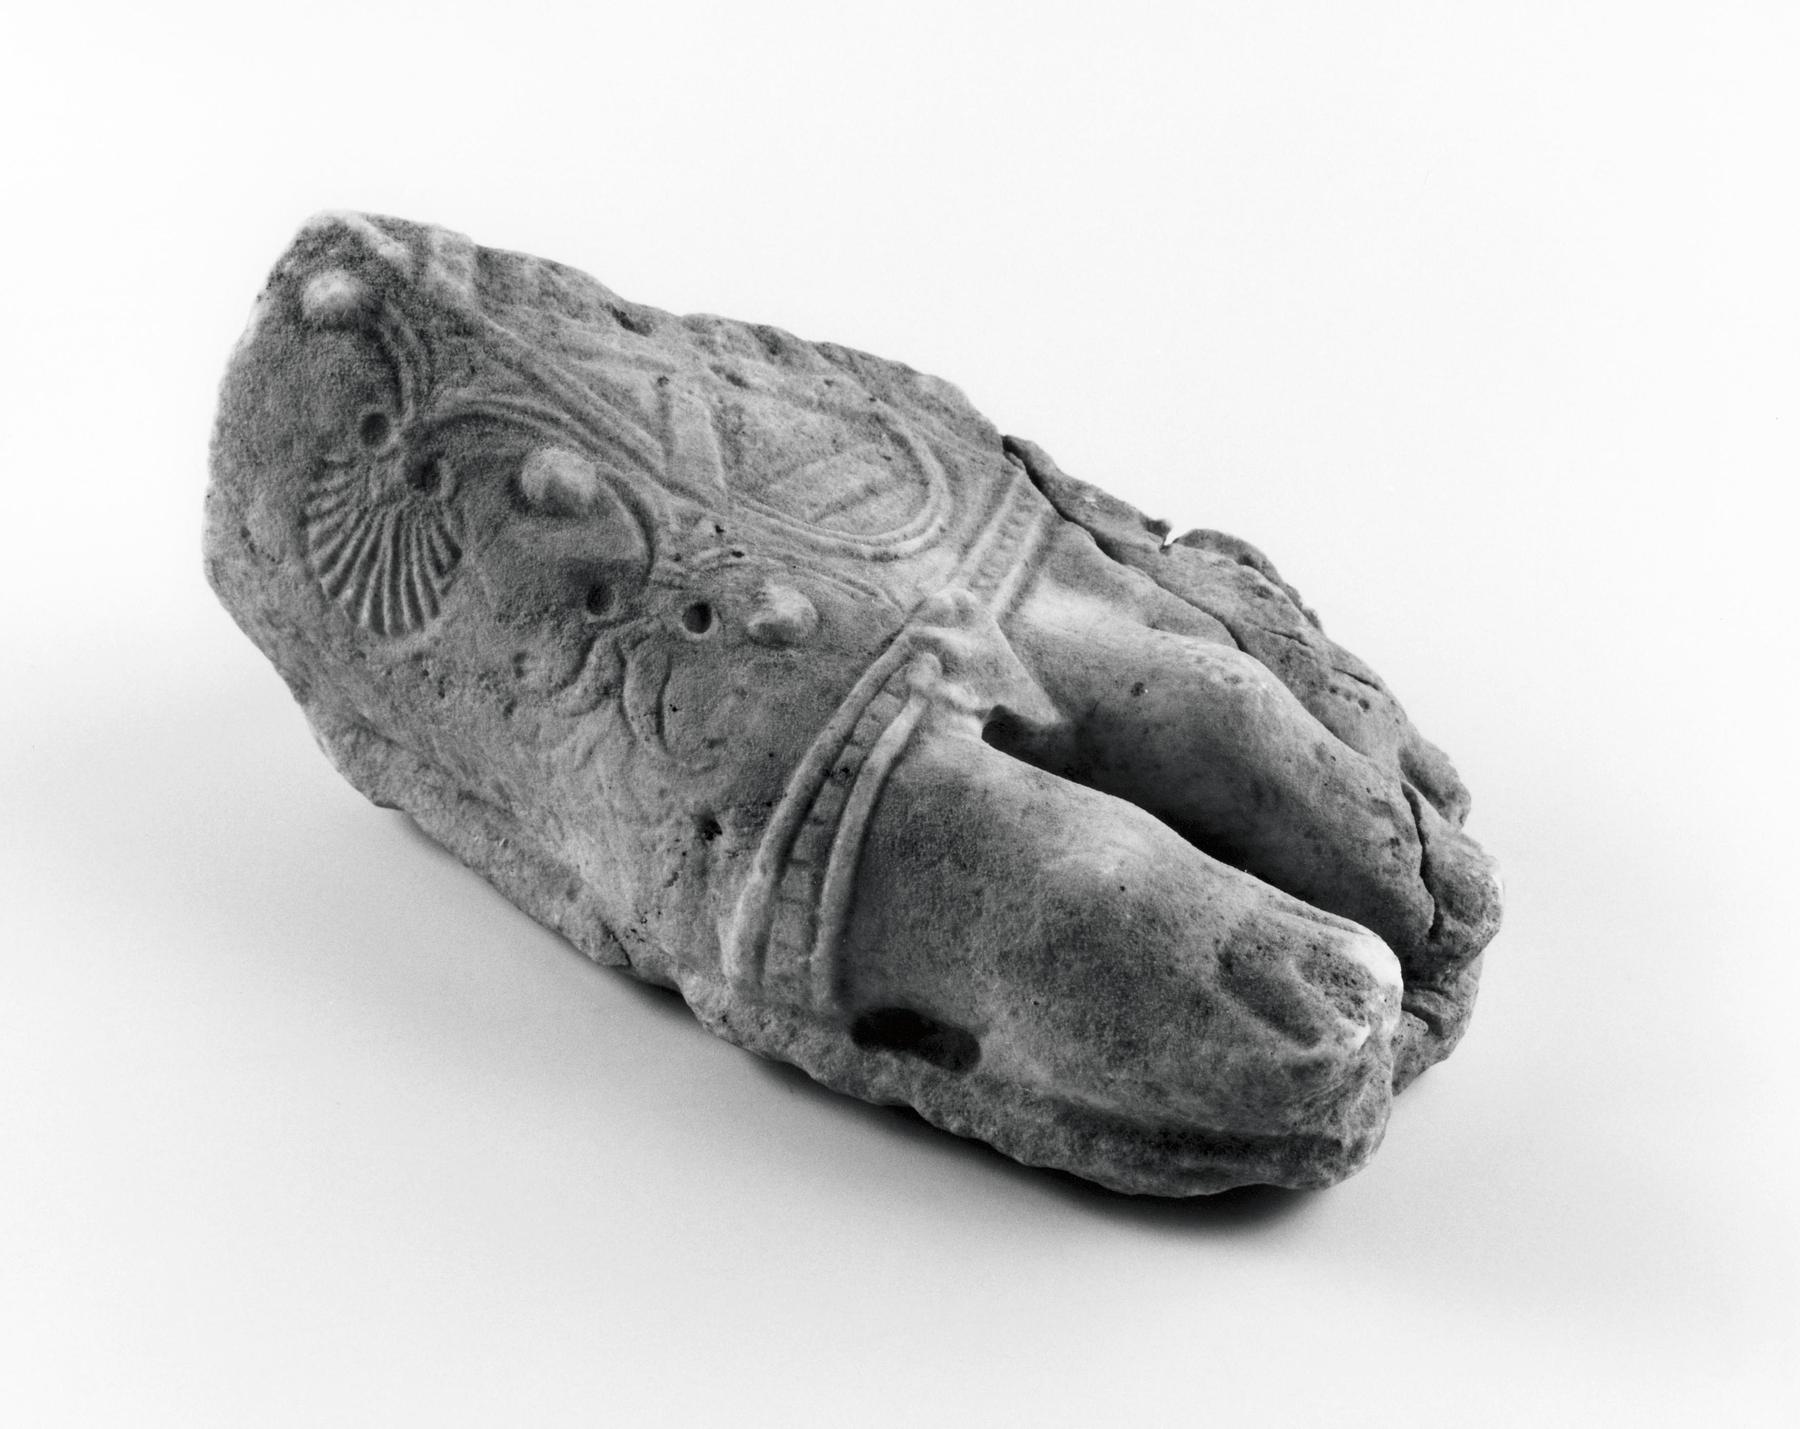 Skulptur over legemsstørrelse af mandlig gud eller kejser, H1462